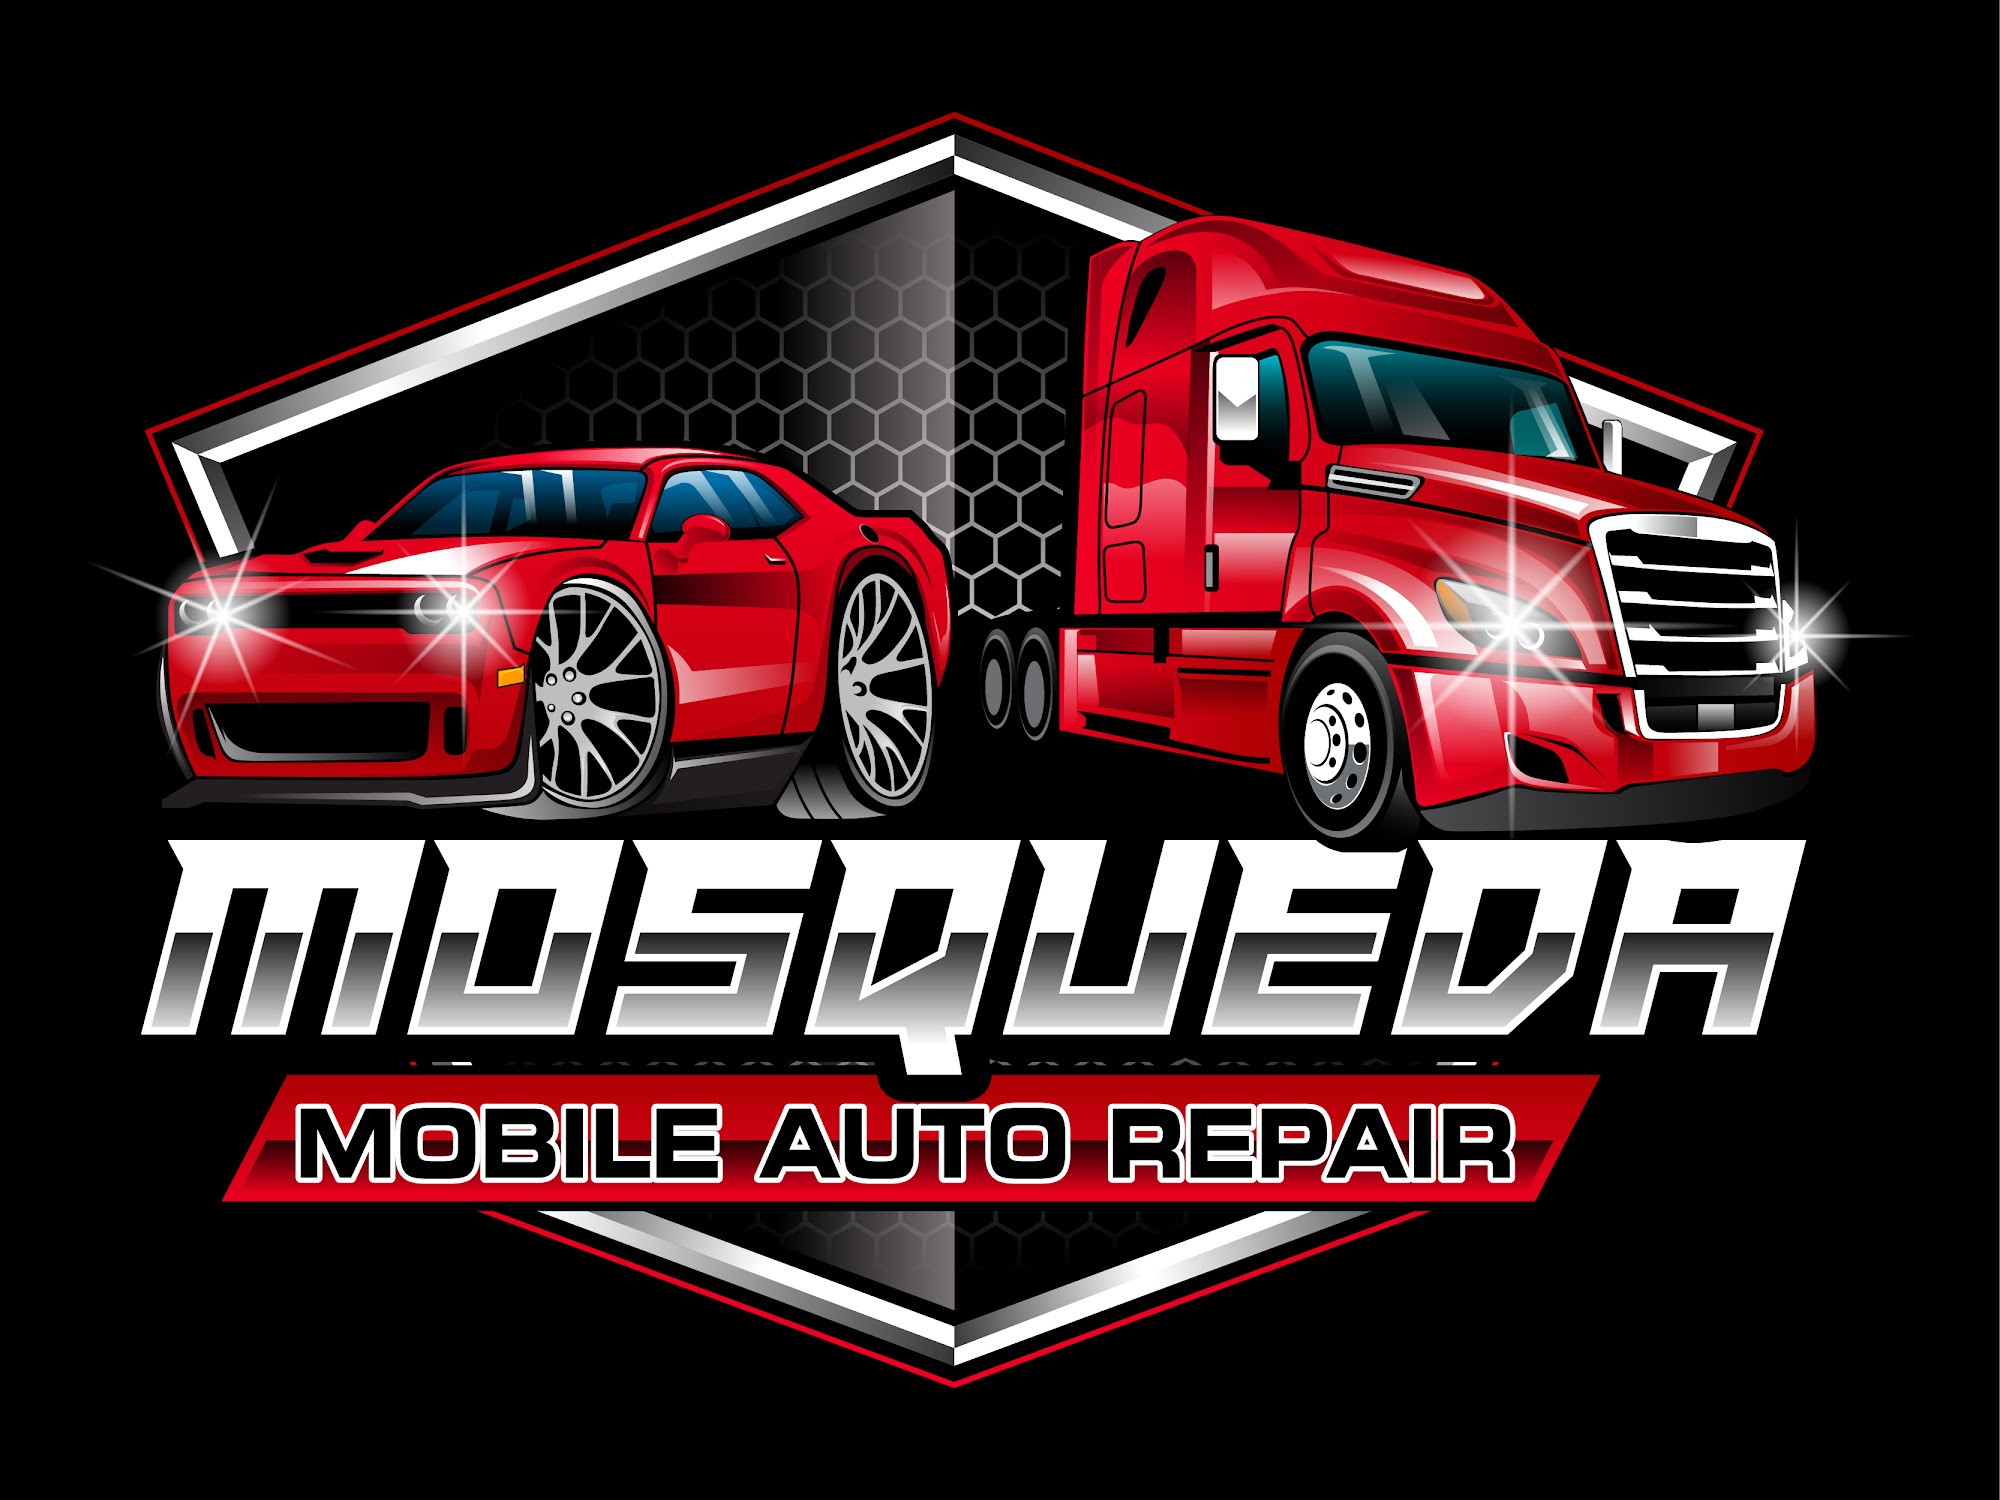 Mosqueda Mobile Auto Repair LLC